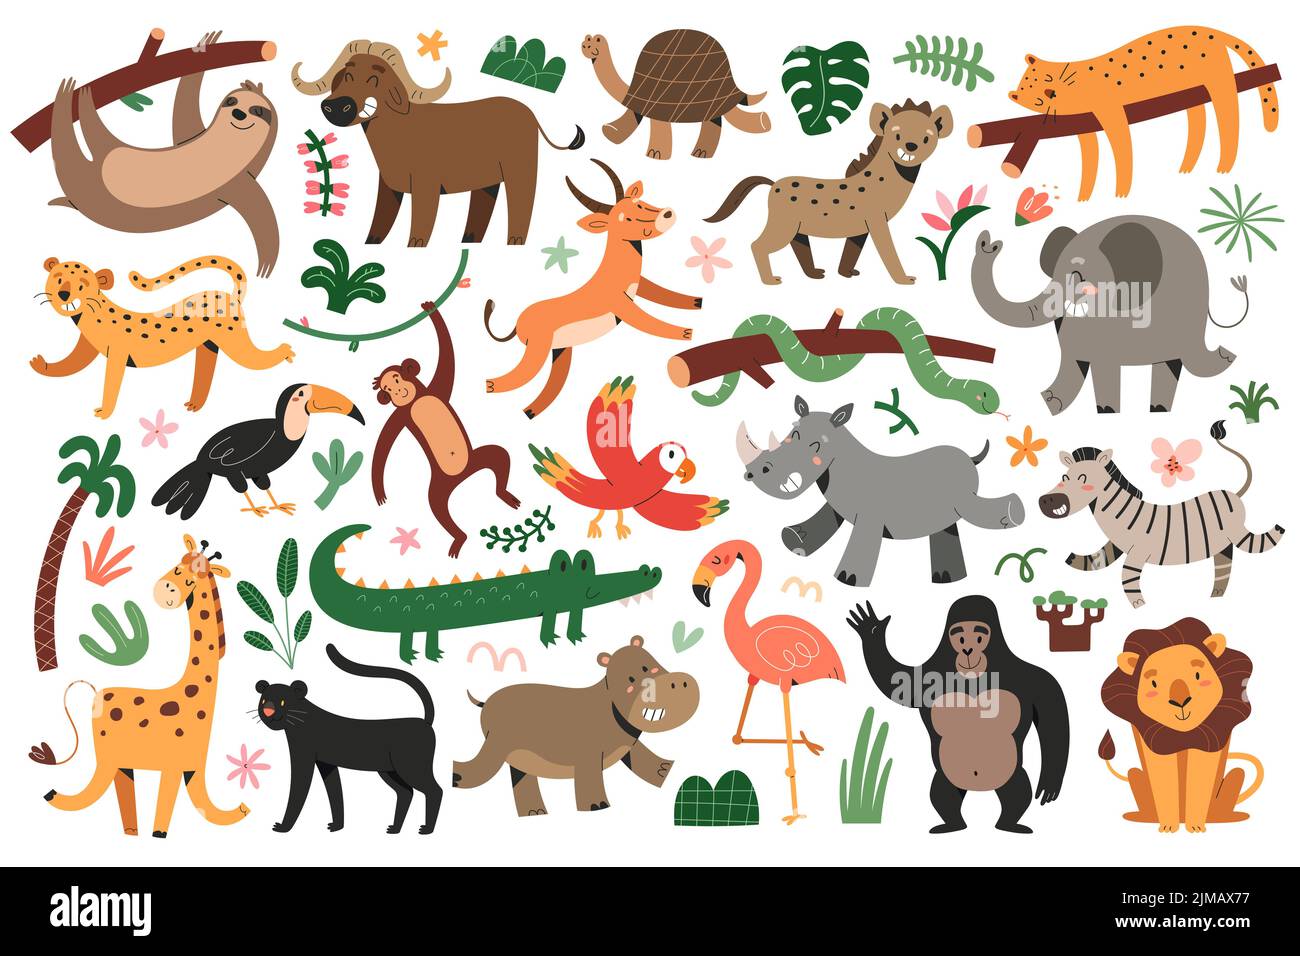 Animaux de la jungle bungle, léopard tropical, felines, girafe dansante et zèbre, jaguar endormi, ensemble d'illustrations vectorielles, personnages mignons pour Illustration de Vecteur